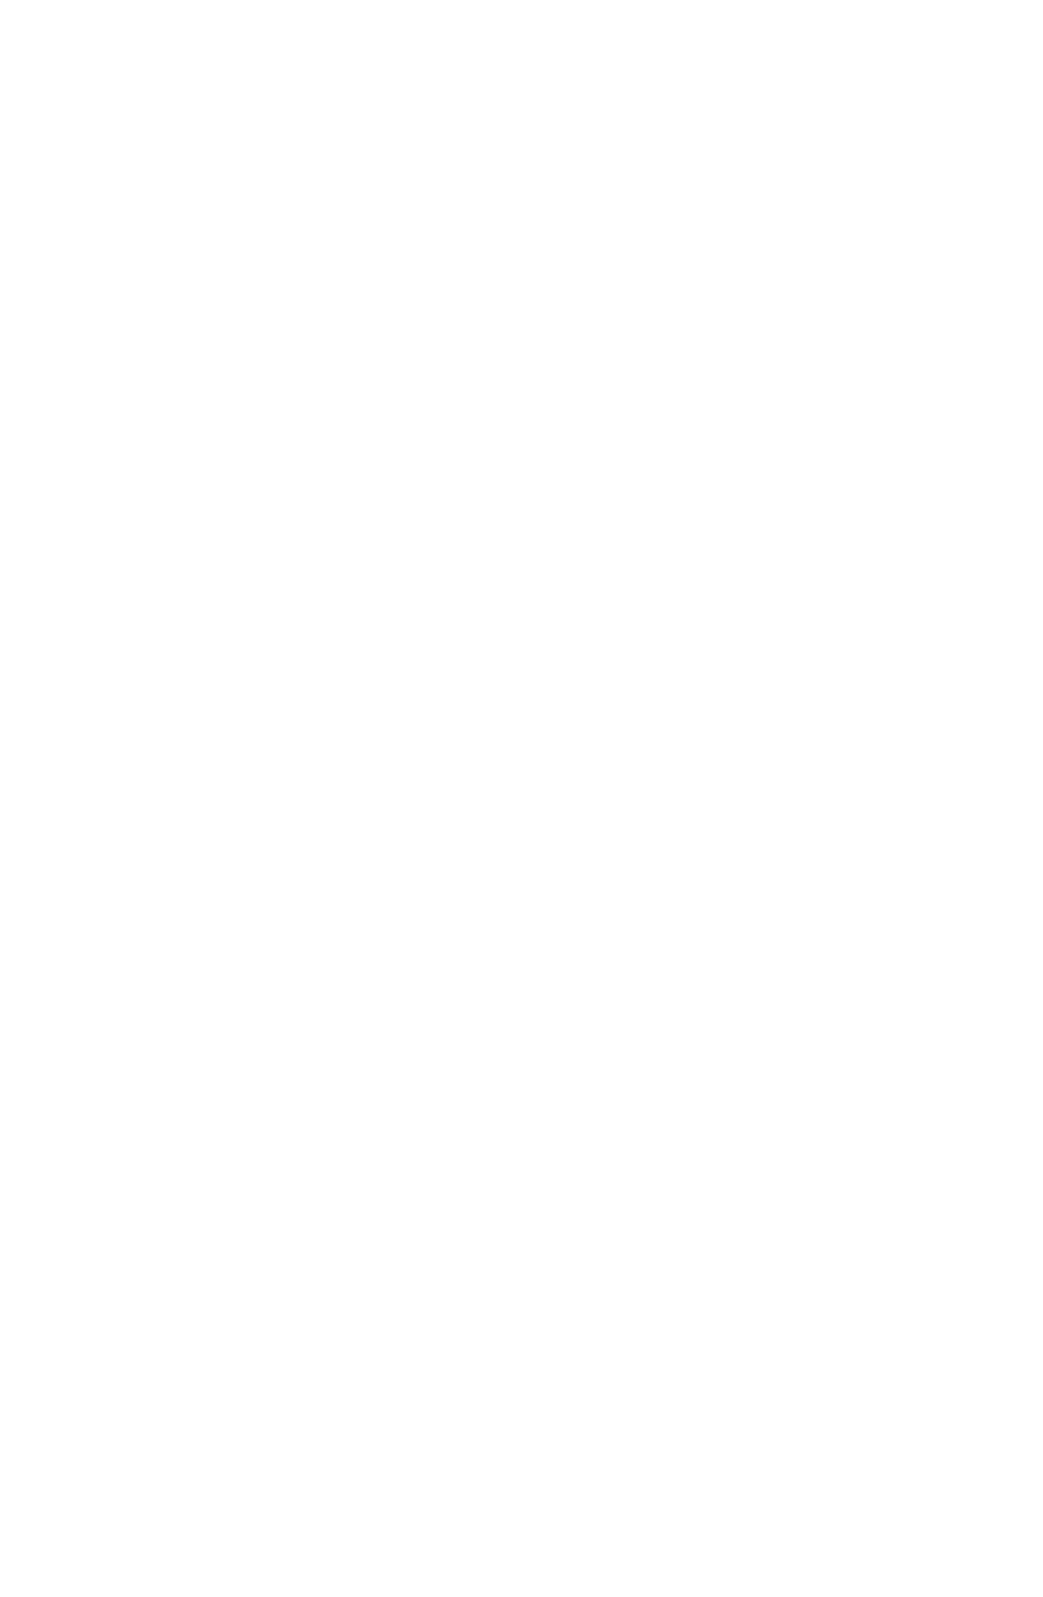 JOANN logo for dark backgrounds (transparent PNG)